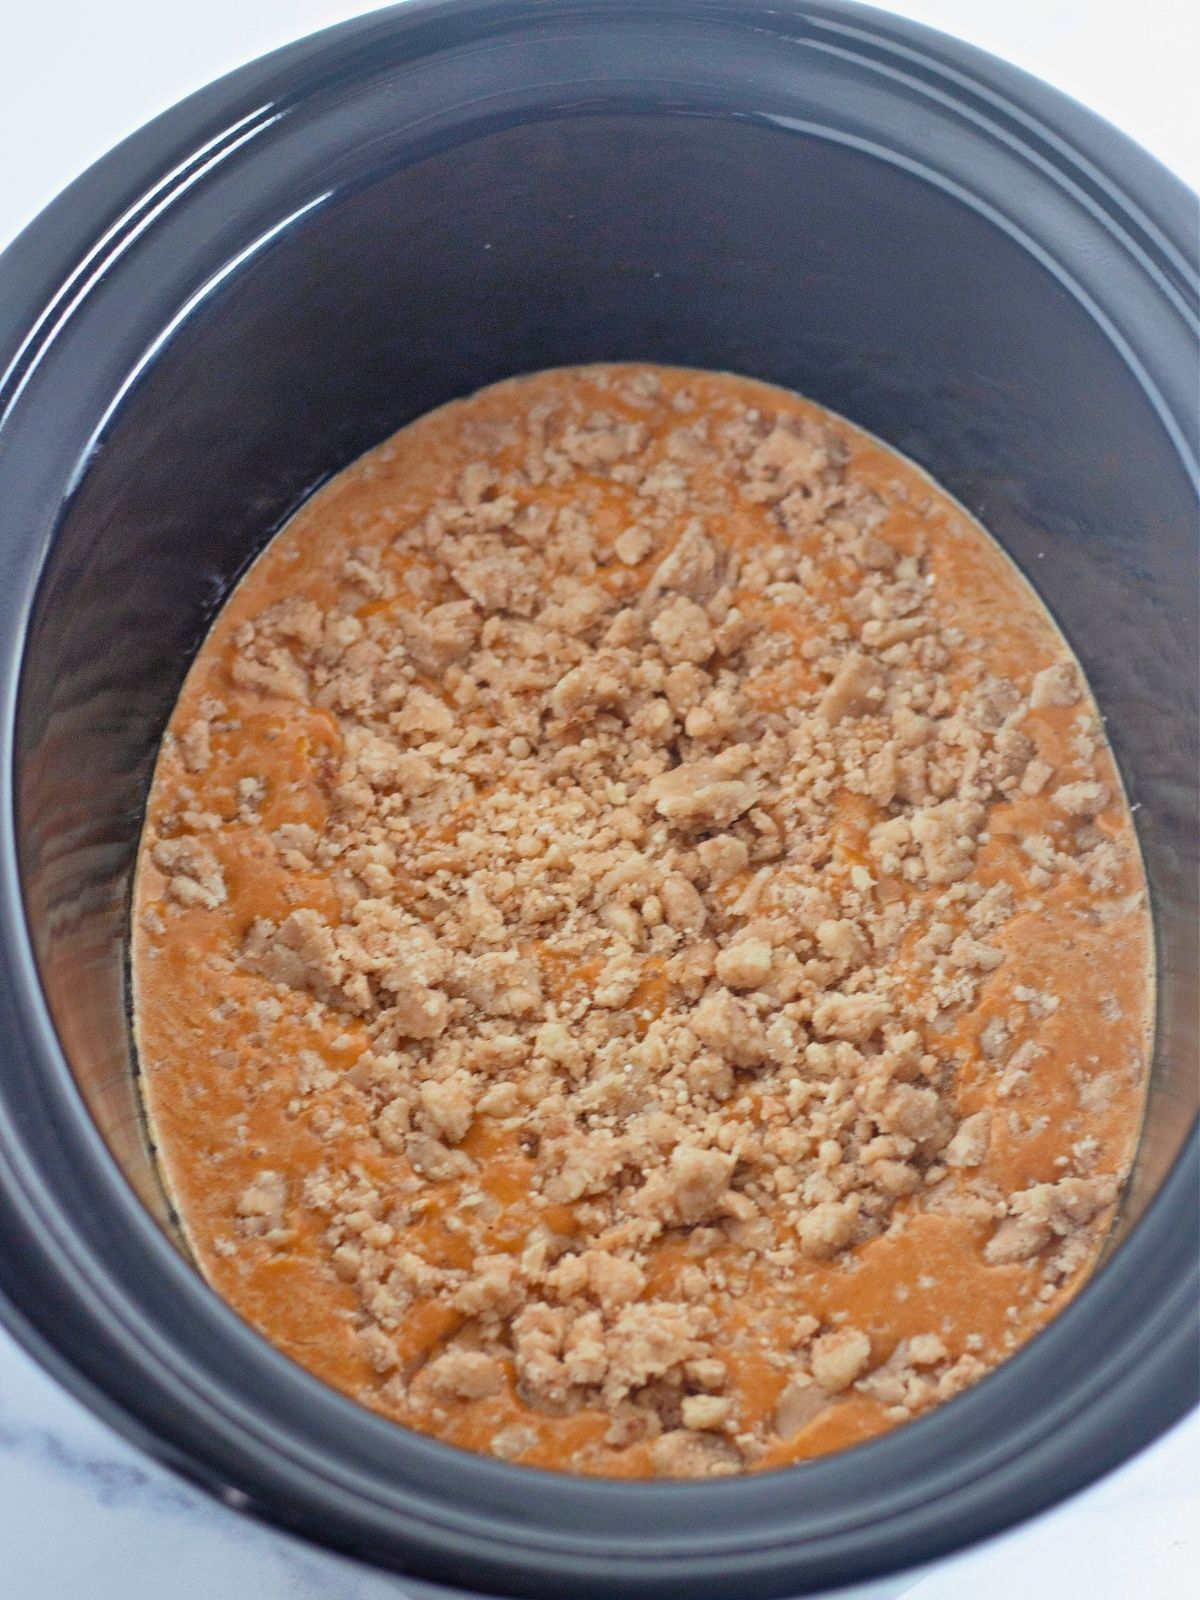 Add cobbler topping to pumpkin mixture in crock pot.